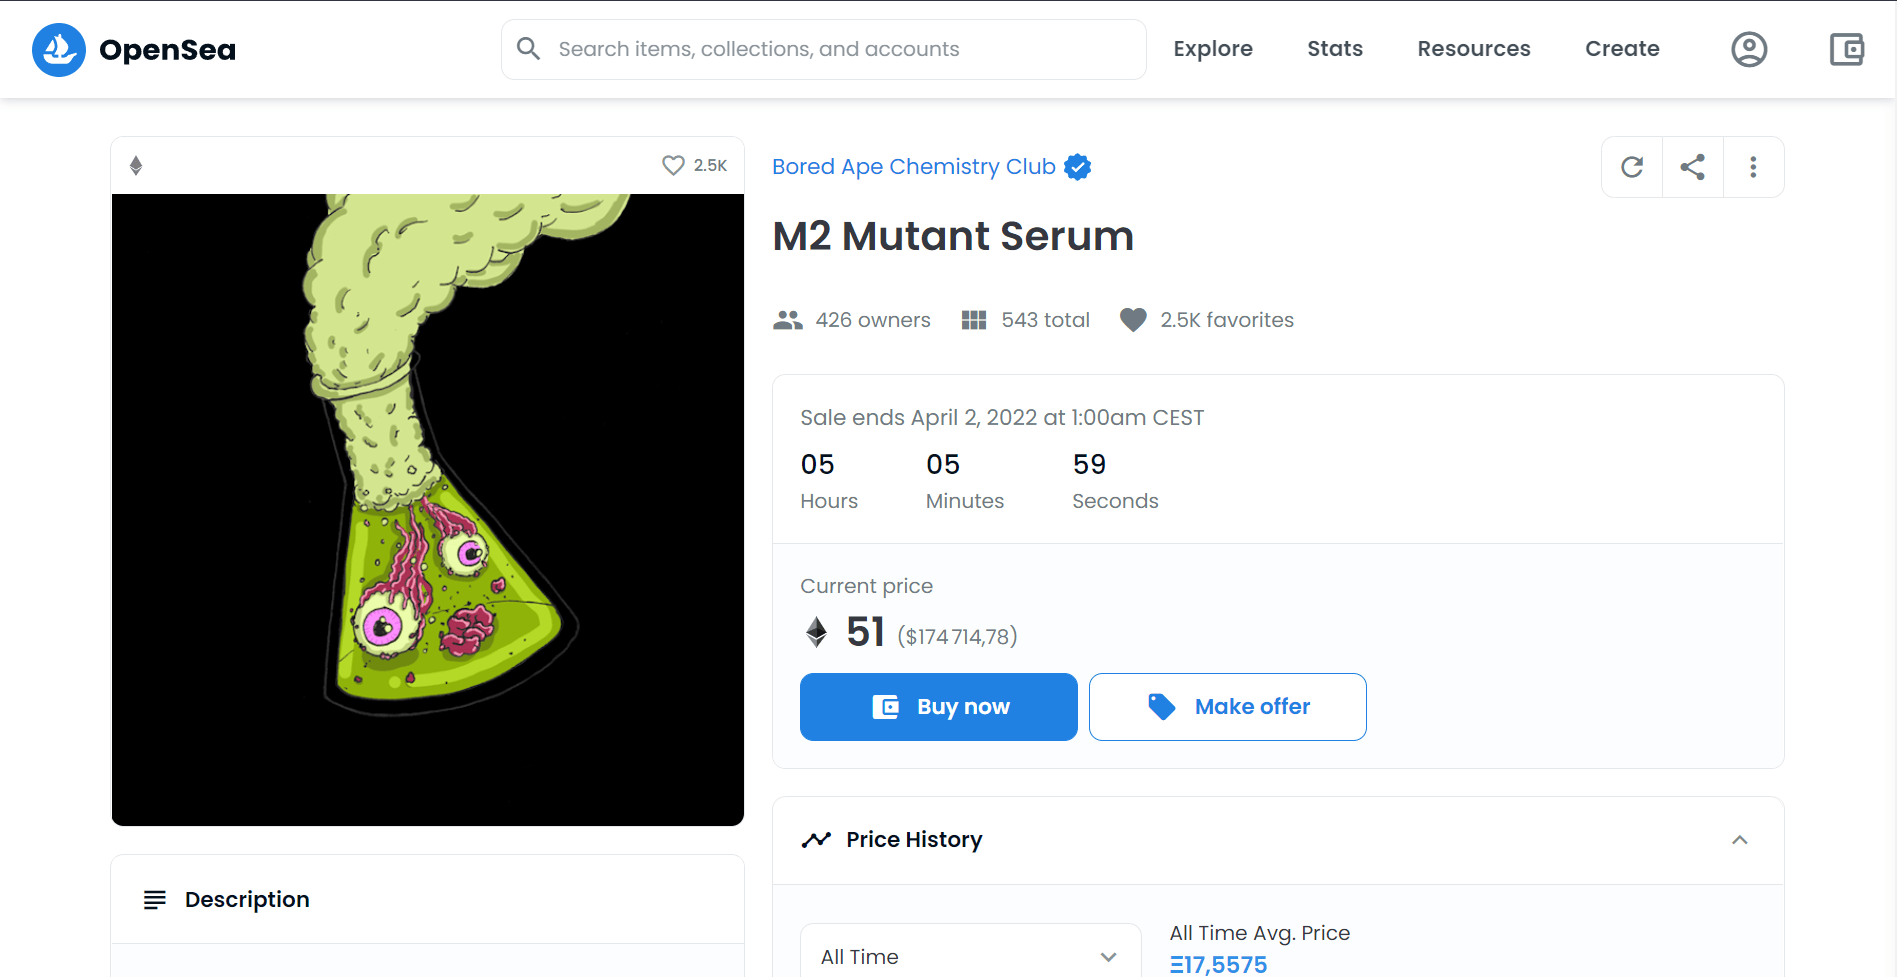 Les Mutant Serum permettant de transformer son Bored Ape se vendent encore plus centaines de milliers de dollars 
